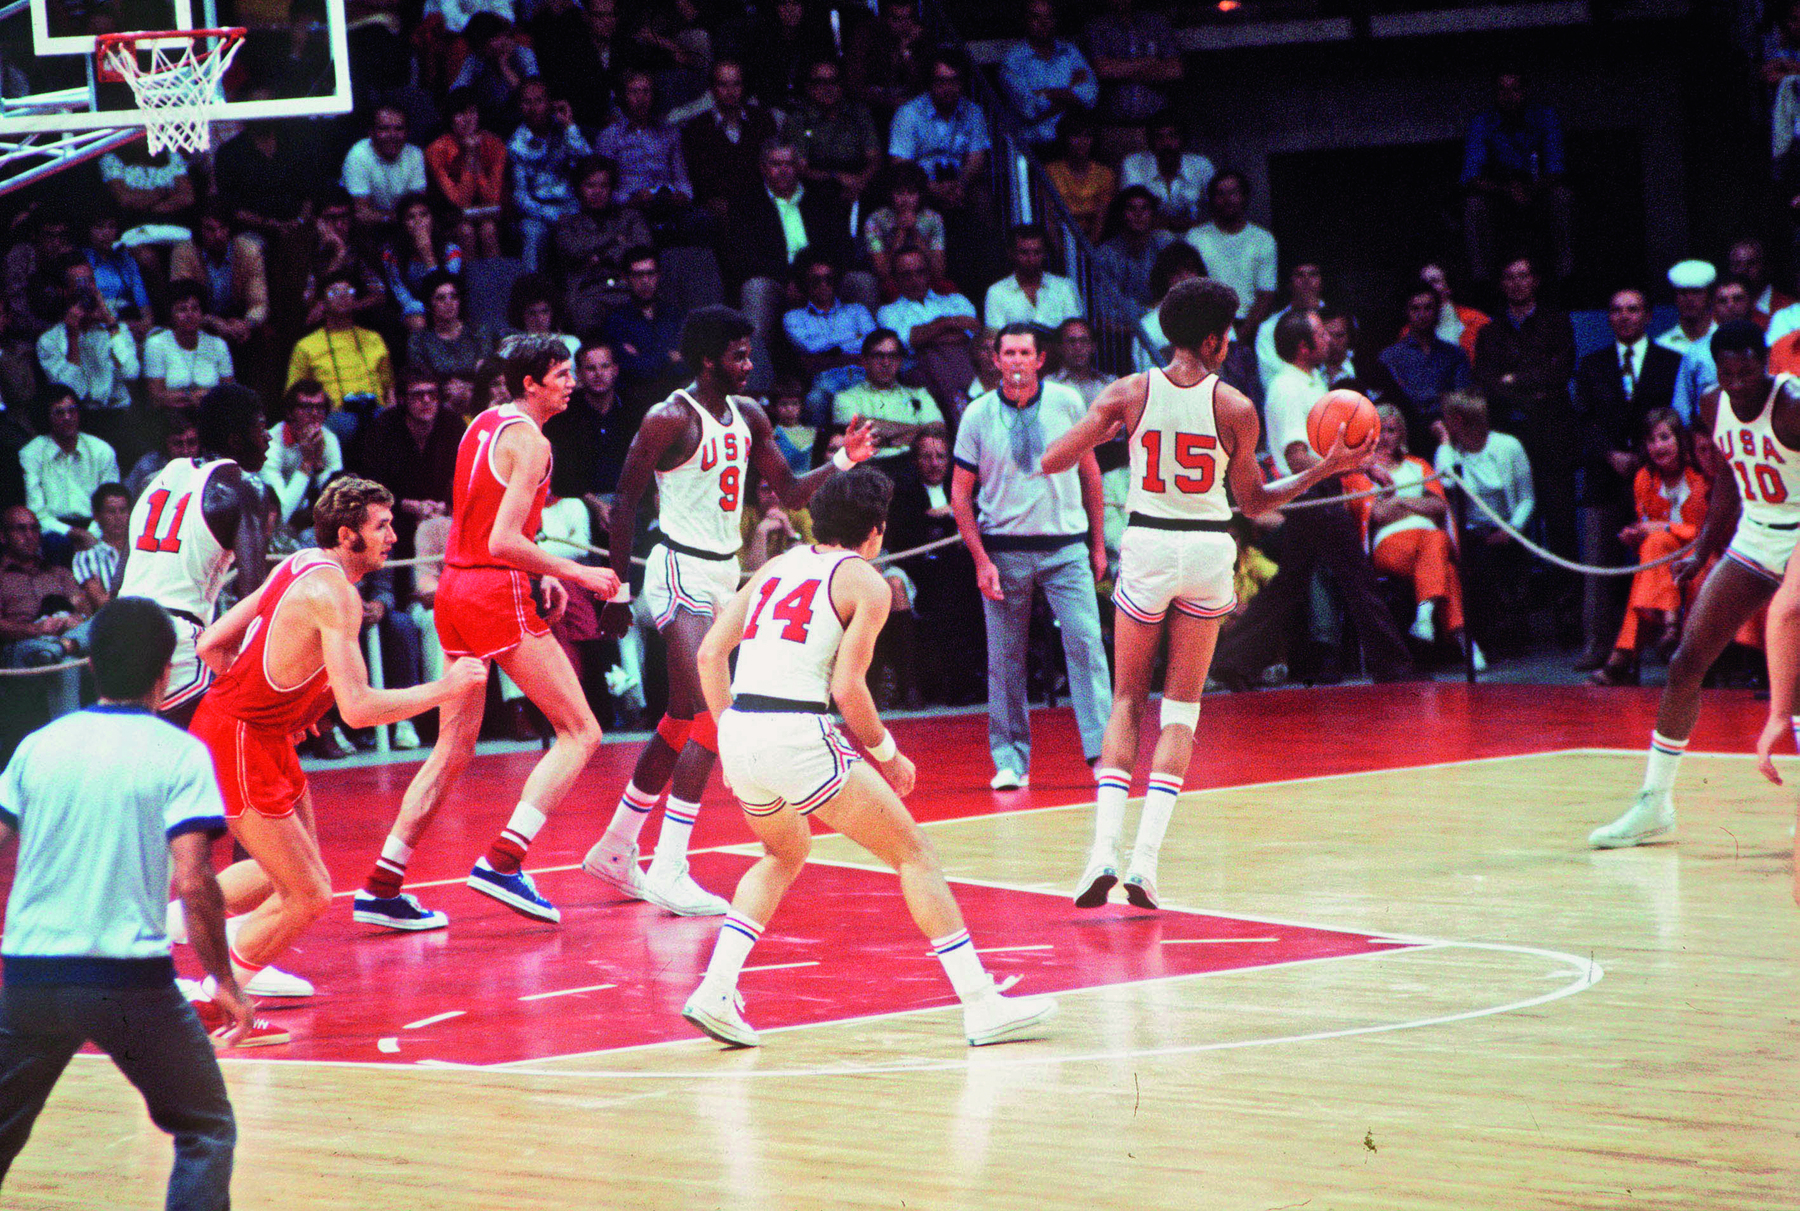 Fotografia. Pessoas assistem a uma partida de basquete. O time dos Estados unidos usa uniforme branco com números vermelhos. O time da união Soviética usa uniforme vermelho com números em brancos. Os jogadores tem as pernas e braços compridos.